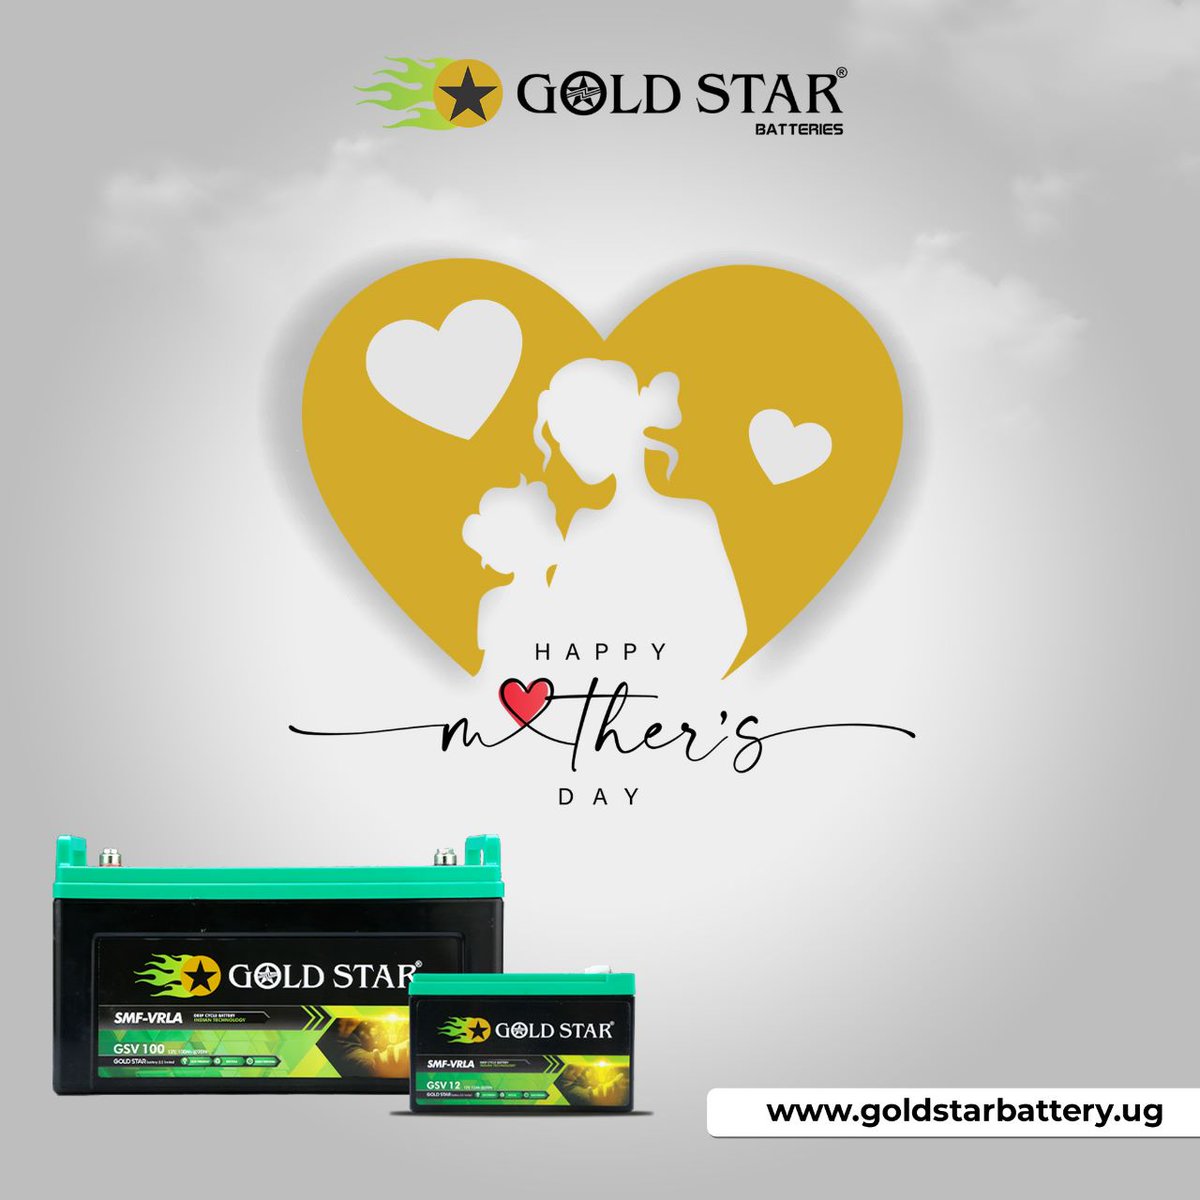 𝐇𝐚𝐩𝐩𝐲 𝐌𝐨𝐭𝐡𝐞𝐫'𝐬 𝐃𝐚𝐲 𝐭𝐨 𝐚𝐥𝐥 𝐭𝐡𝐞 𝐢𝐧𝐜𝐫𝐞𝐝𝐢𝐛𝐥𝐞 𝐦𝐨𝐦𝐬 𝐨𝐮𝐭 𝐭𝐡𝐞𝐫𝐞!
.
#goldstar #goldstarbattery #battery #batterypack  #batterymanufacturer #batterymanufacturerindia #mothersday #mothersdayweekend #happymothersday #HappyMothersDayWishes